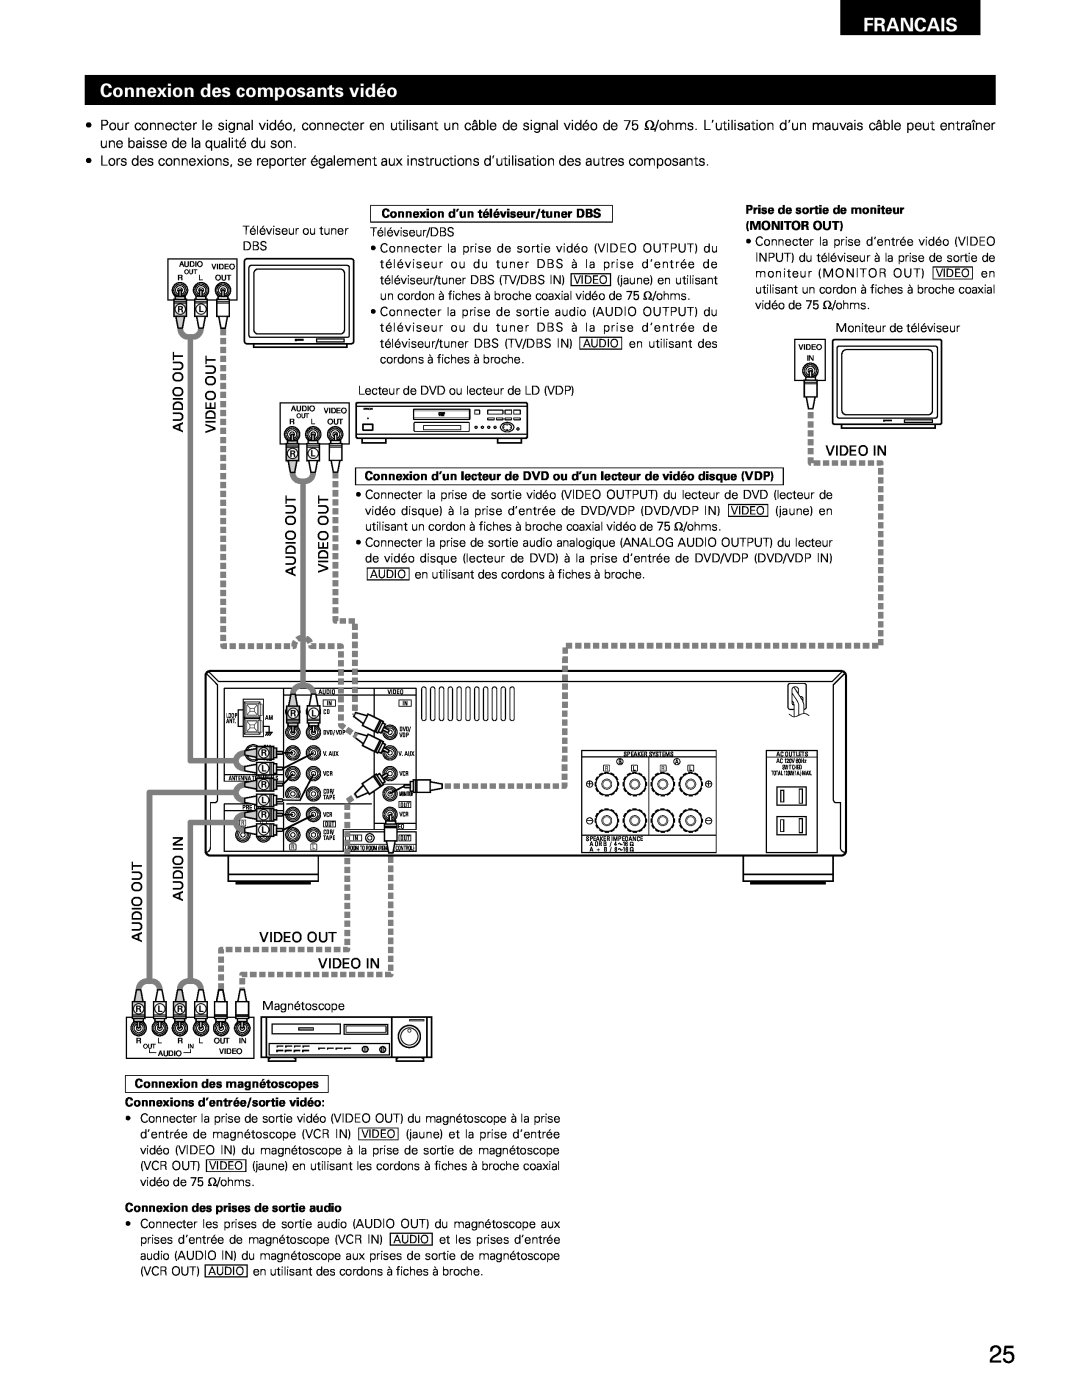 Denon DRA-295 manual FRANCAIS Connexion des composants vidéo, Connexion d’un téléviseur/tuner DBS, Monitor Out 